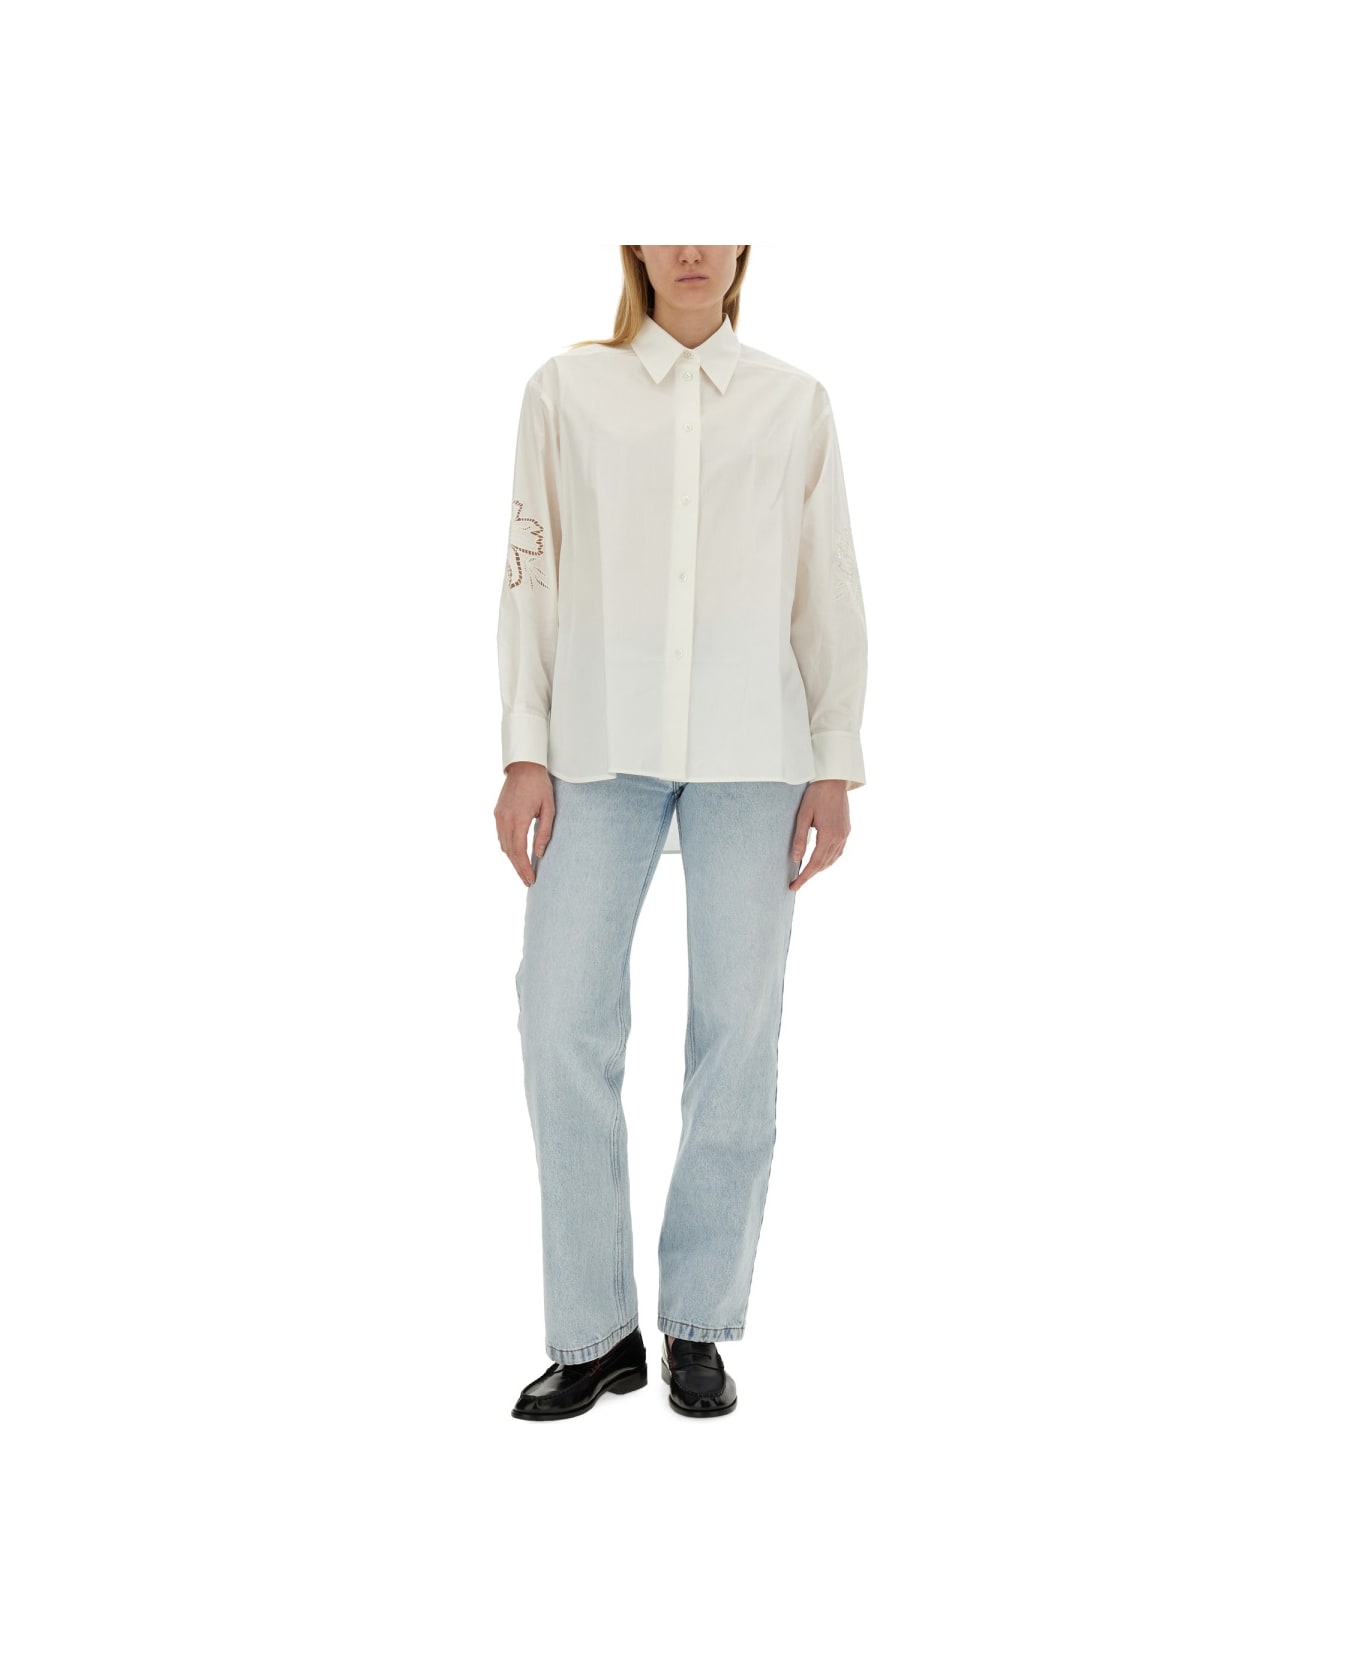 Paul Smith Cotton Shirt - WHITE